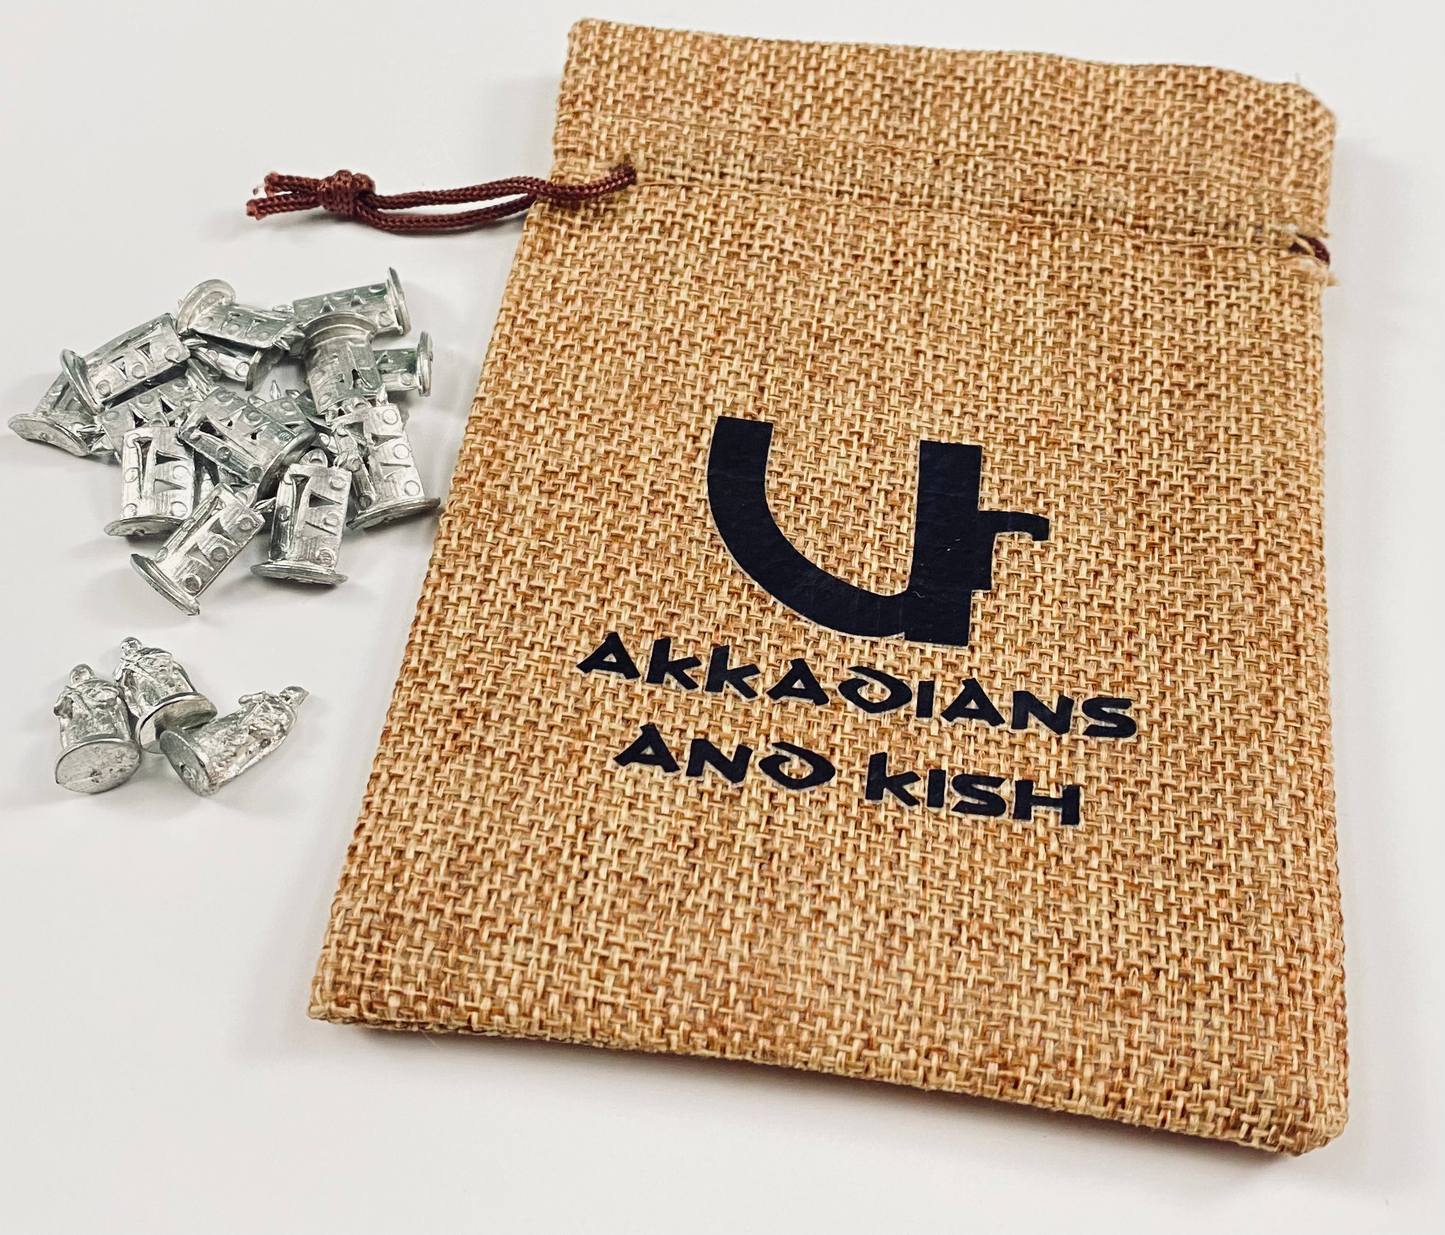 Set of Kish & Akkadians with Burlap bag